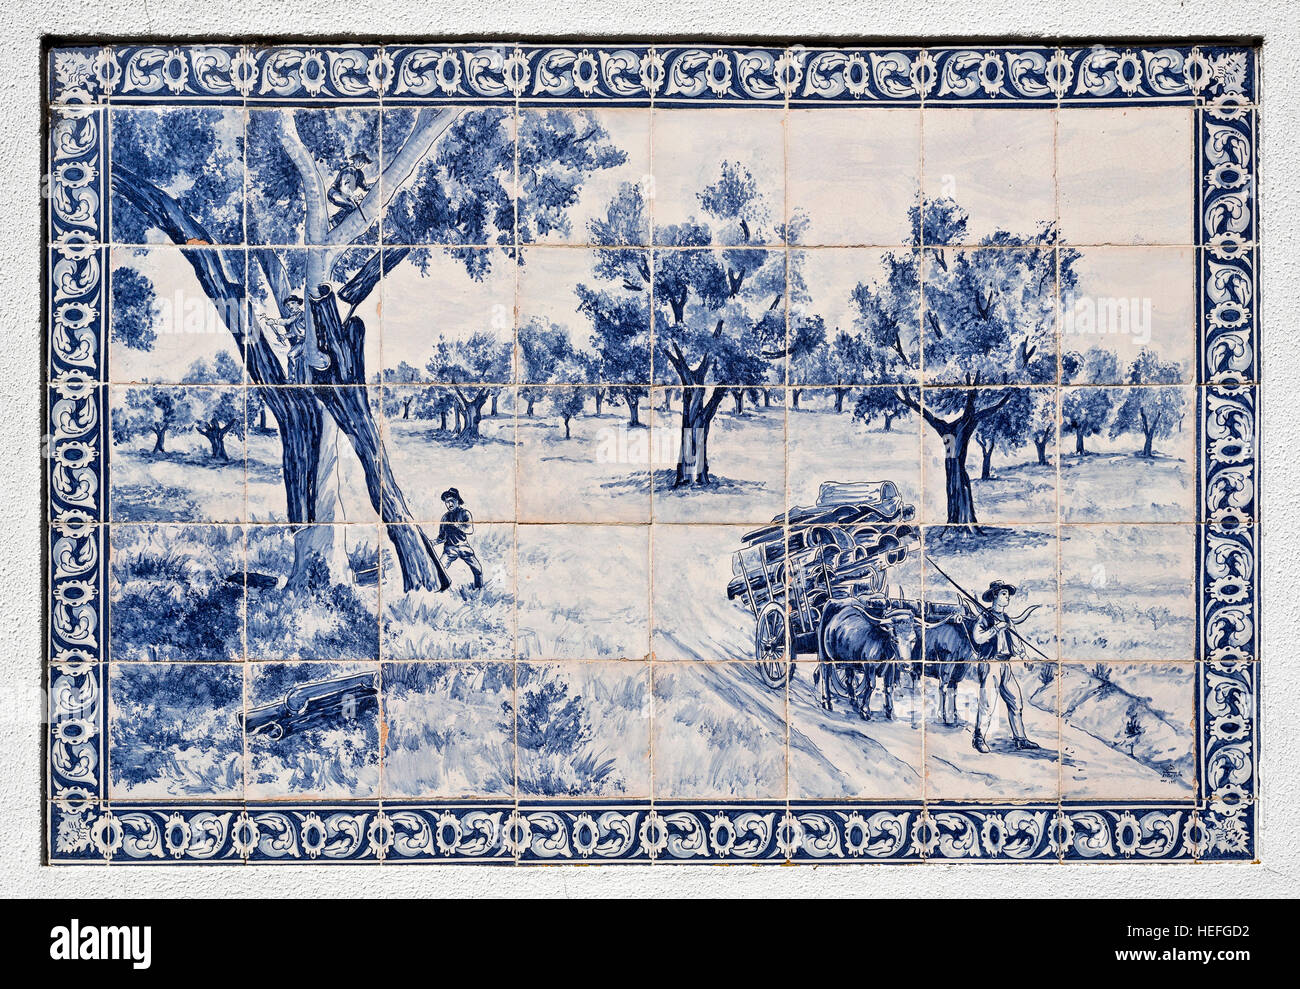 Pannello di piastrelle raffigurante la tradizionale raccolta di sughero da querce da sughero, su una parete in Azeitao, Portogallo, autore ignoto Foto Stock